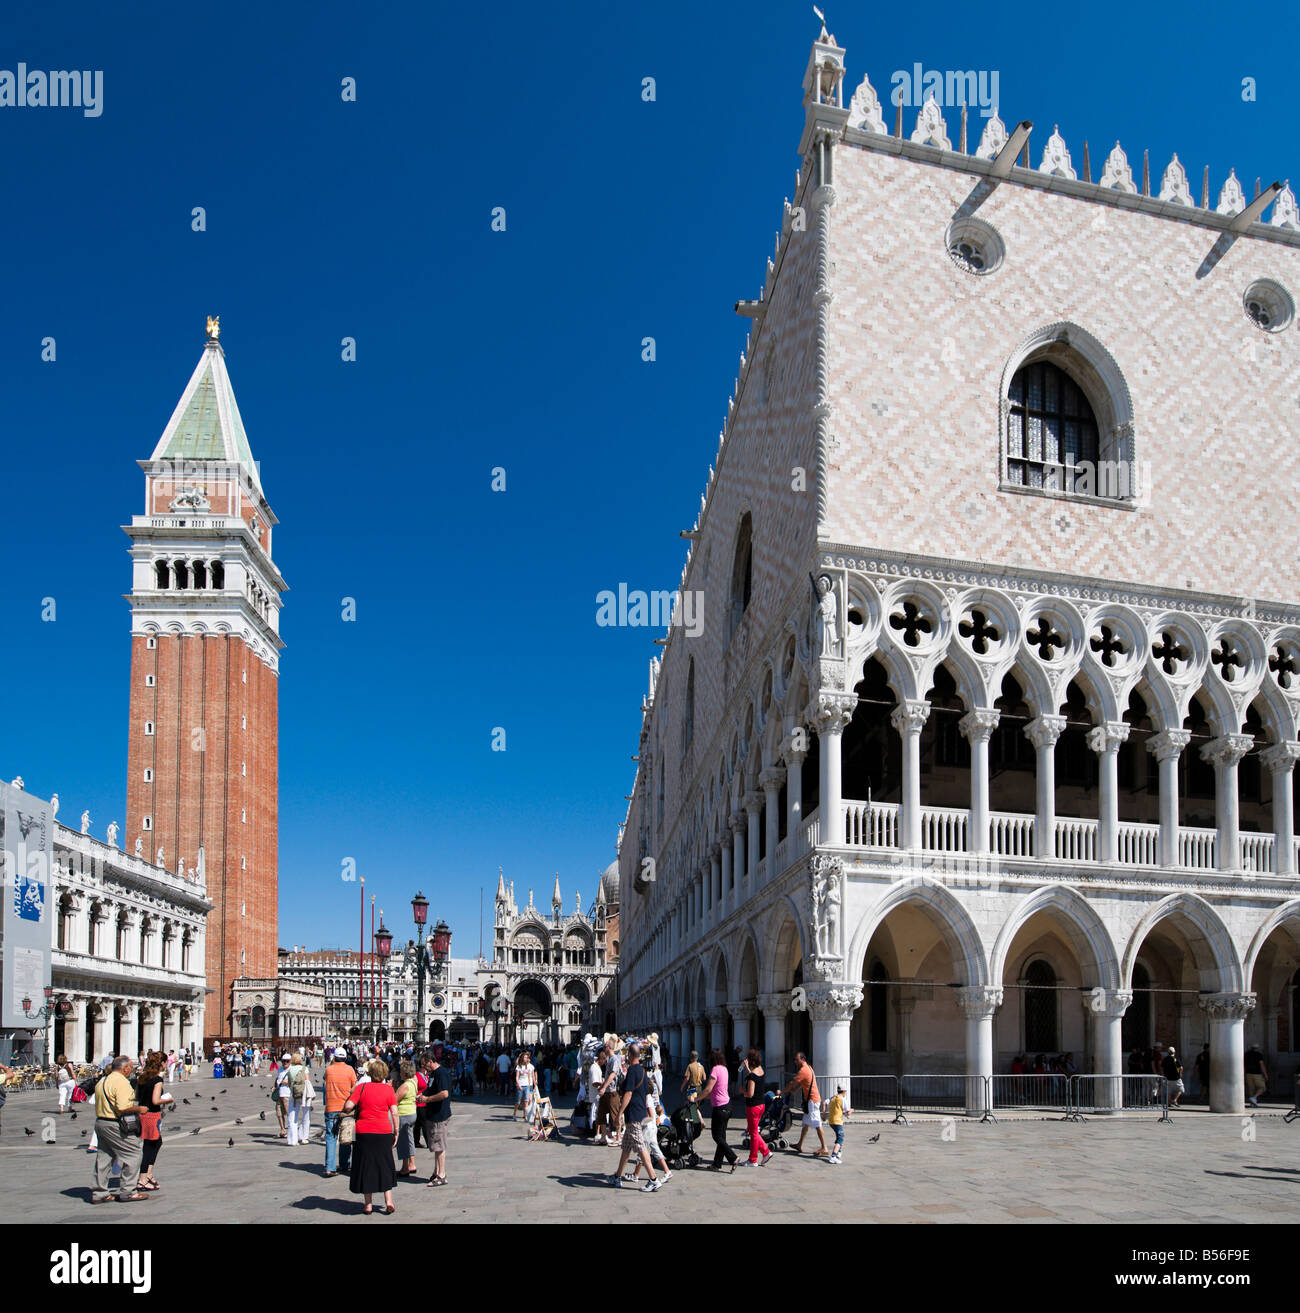 Der Campanile und den Palazzo Ducale mit der Basilika im Hintergrund, Piazzetta, San Marco, Venedig, Veneto, Italien Stockfoto